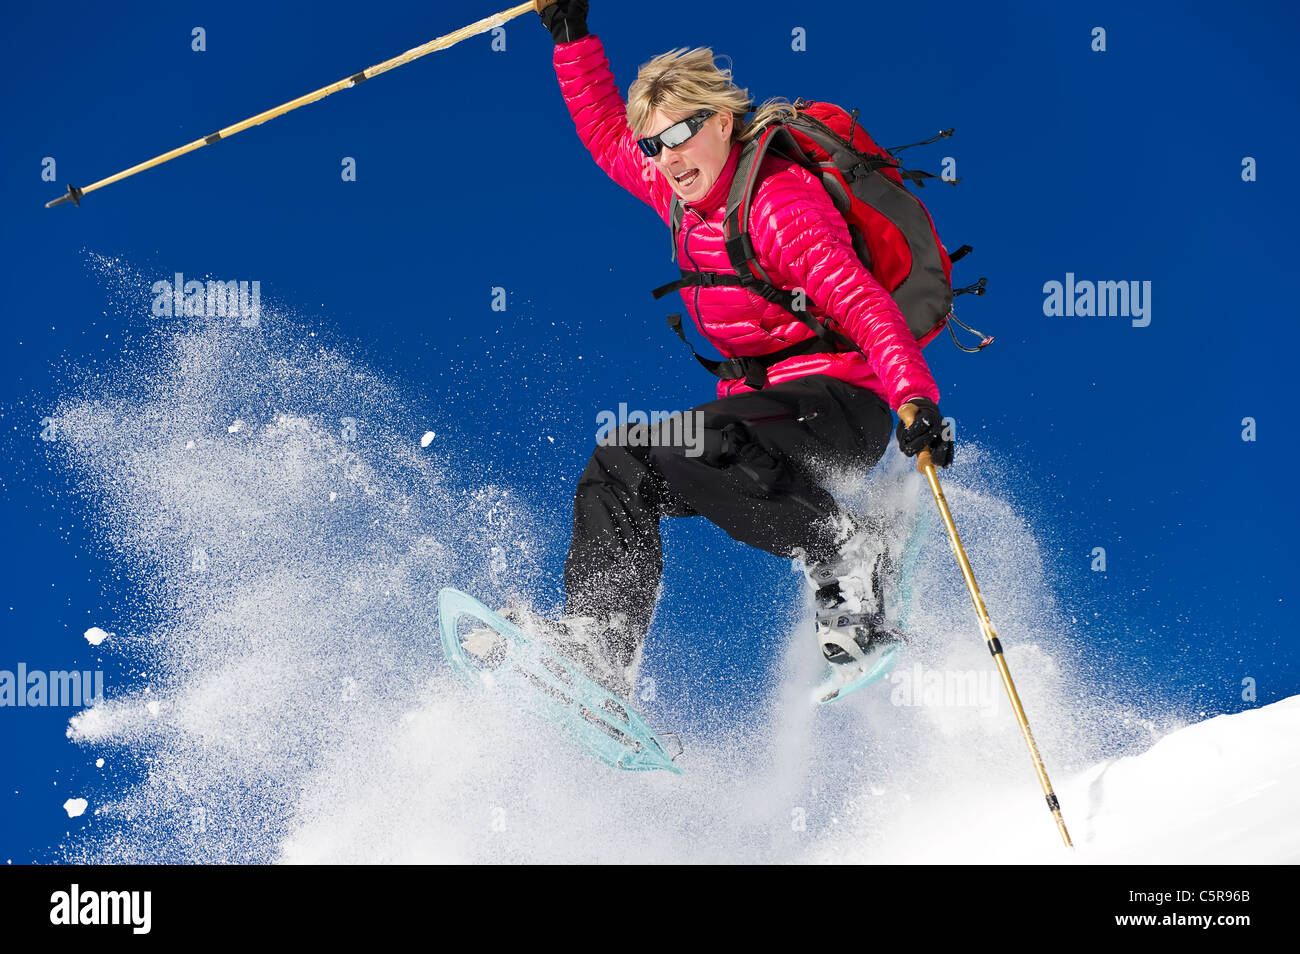 A woman snowshoeing leaps through fresh powder snow. Stock Photo